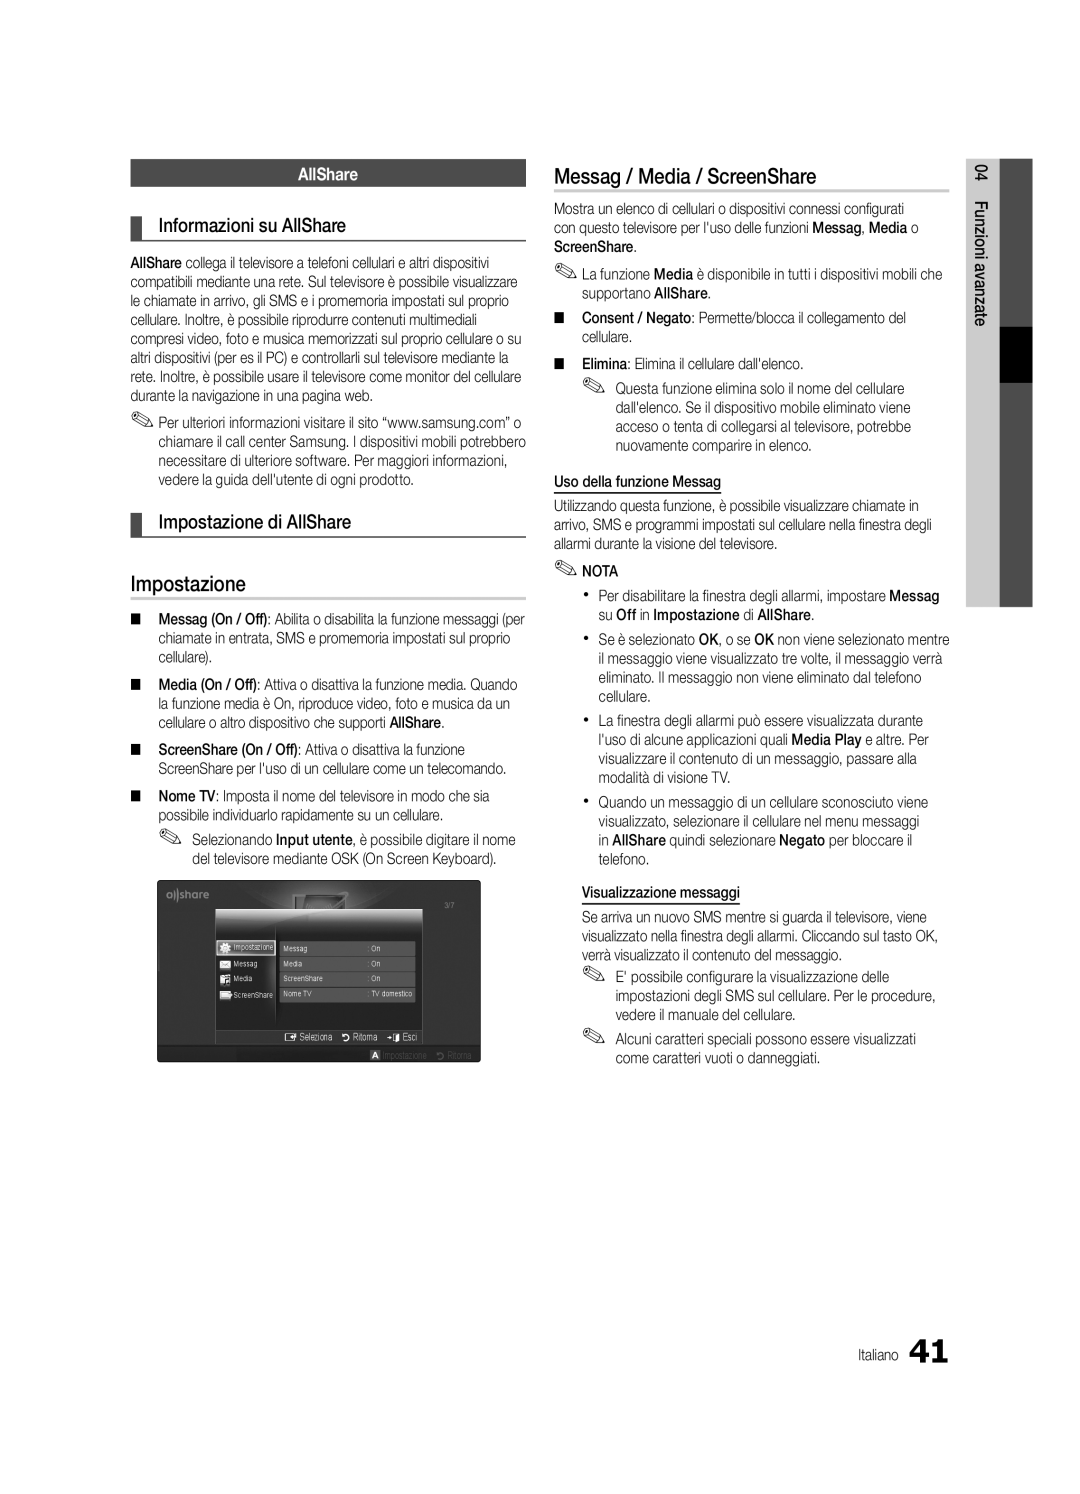 Samsung UE40C5700QSXZG manual Messag / Media / ScreenShare, Informazioni su AllShare, Impostazione di AllShare 